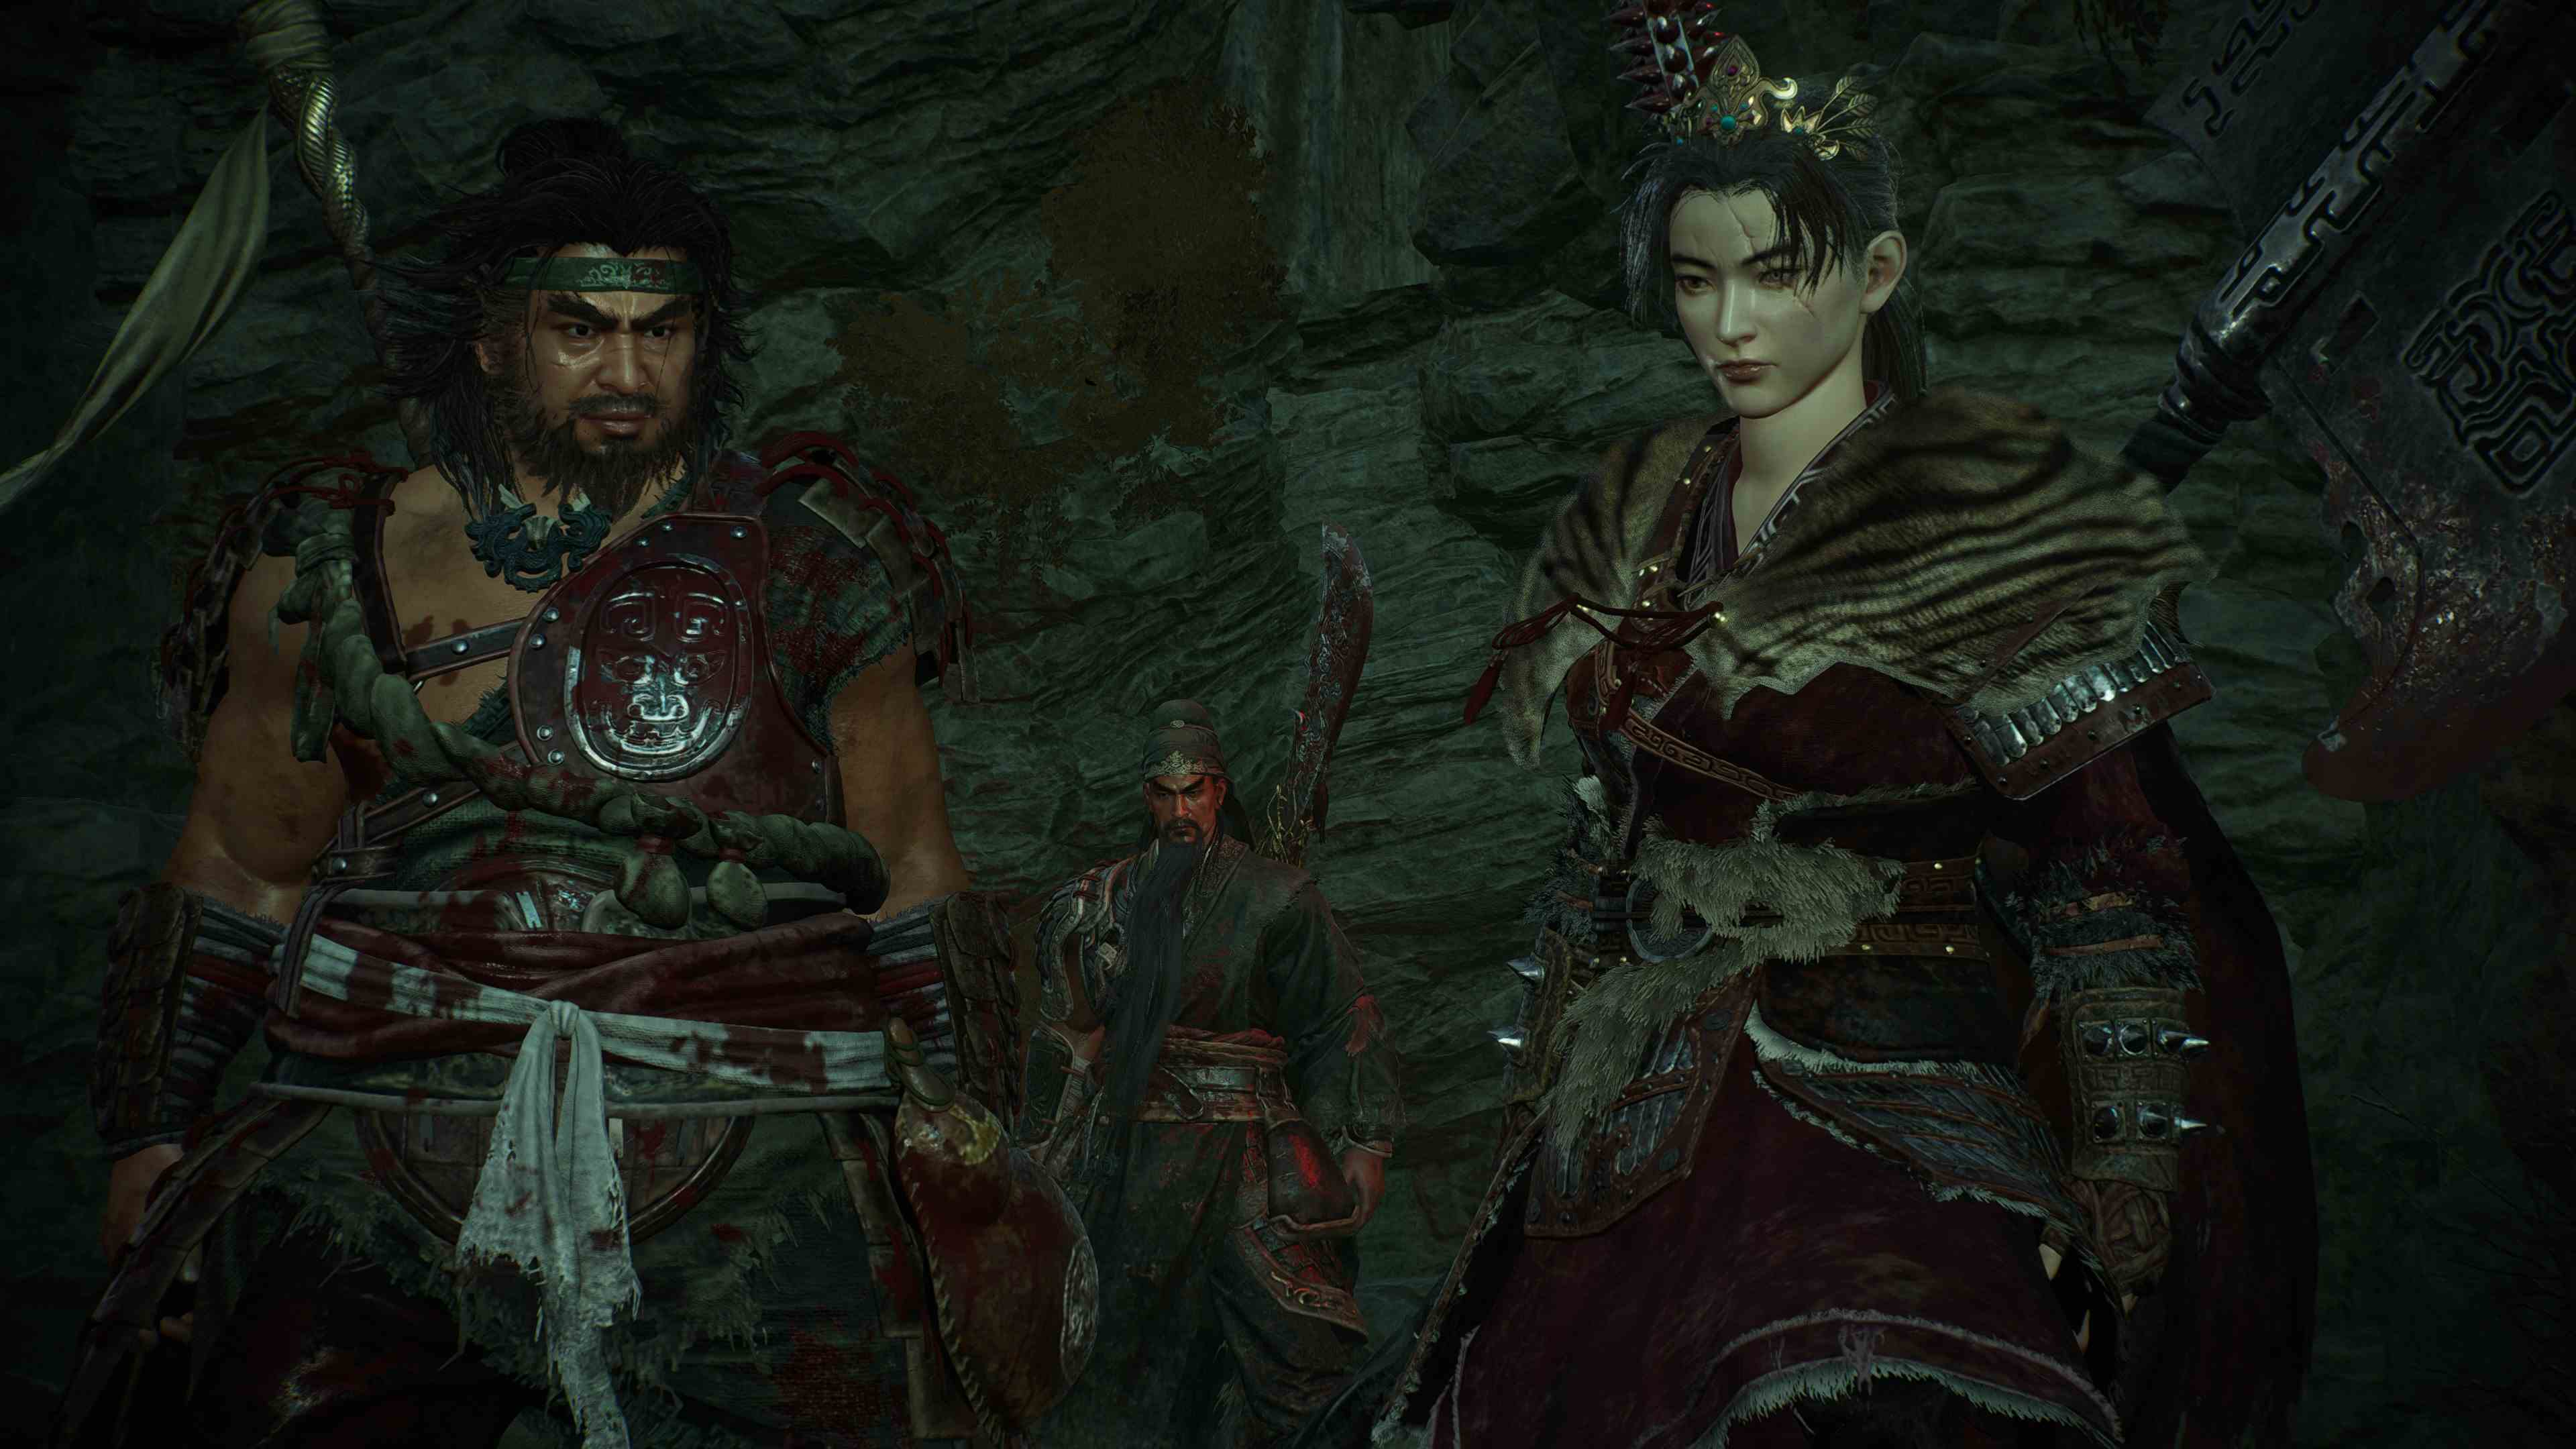 Wo Long: Fallen Dynasty NPC müttefiklerinin yanında duran oyuncunun Fotoğraf Modunda çekilmiş oyun içi ekran görüntüsü.